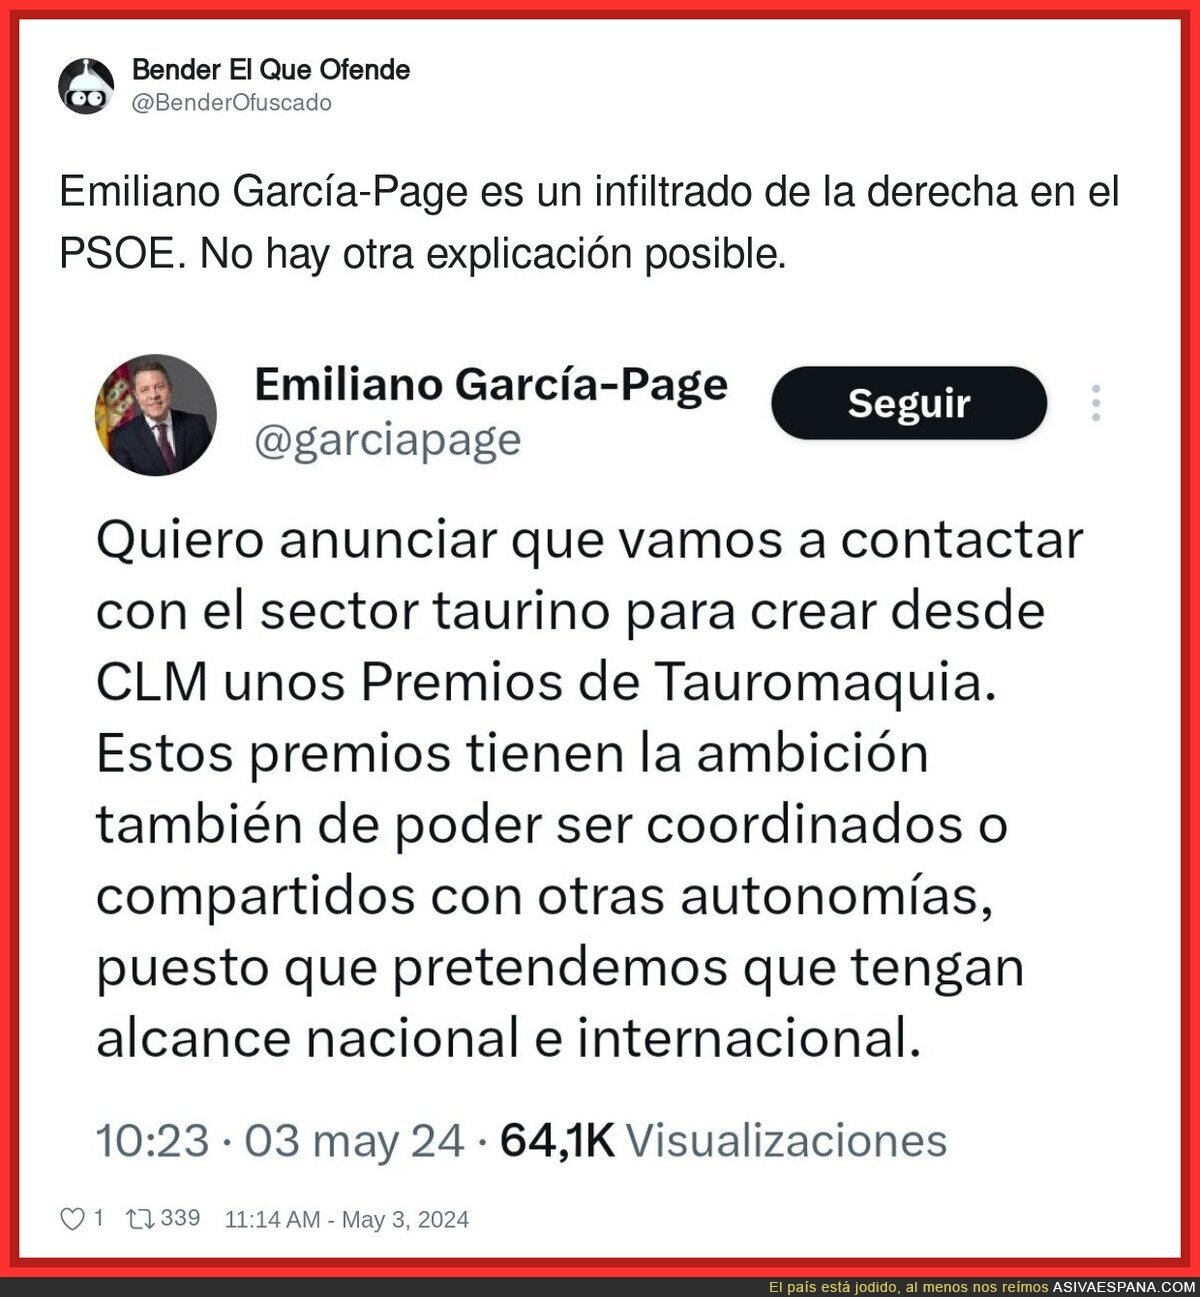 Bien raro lo de Emiliano García-Page